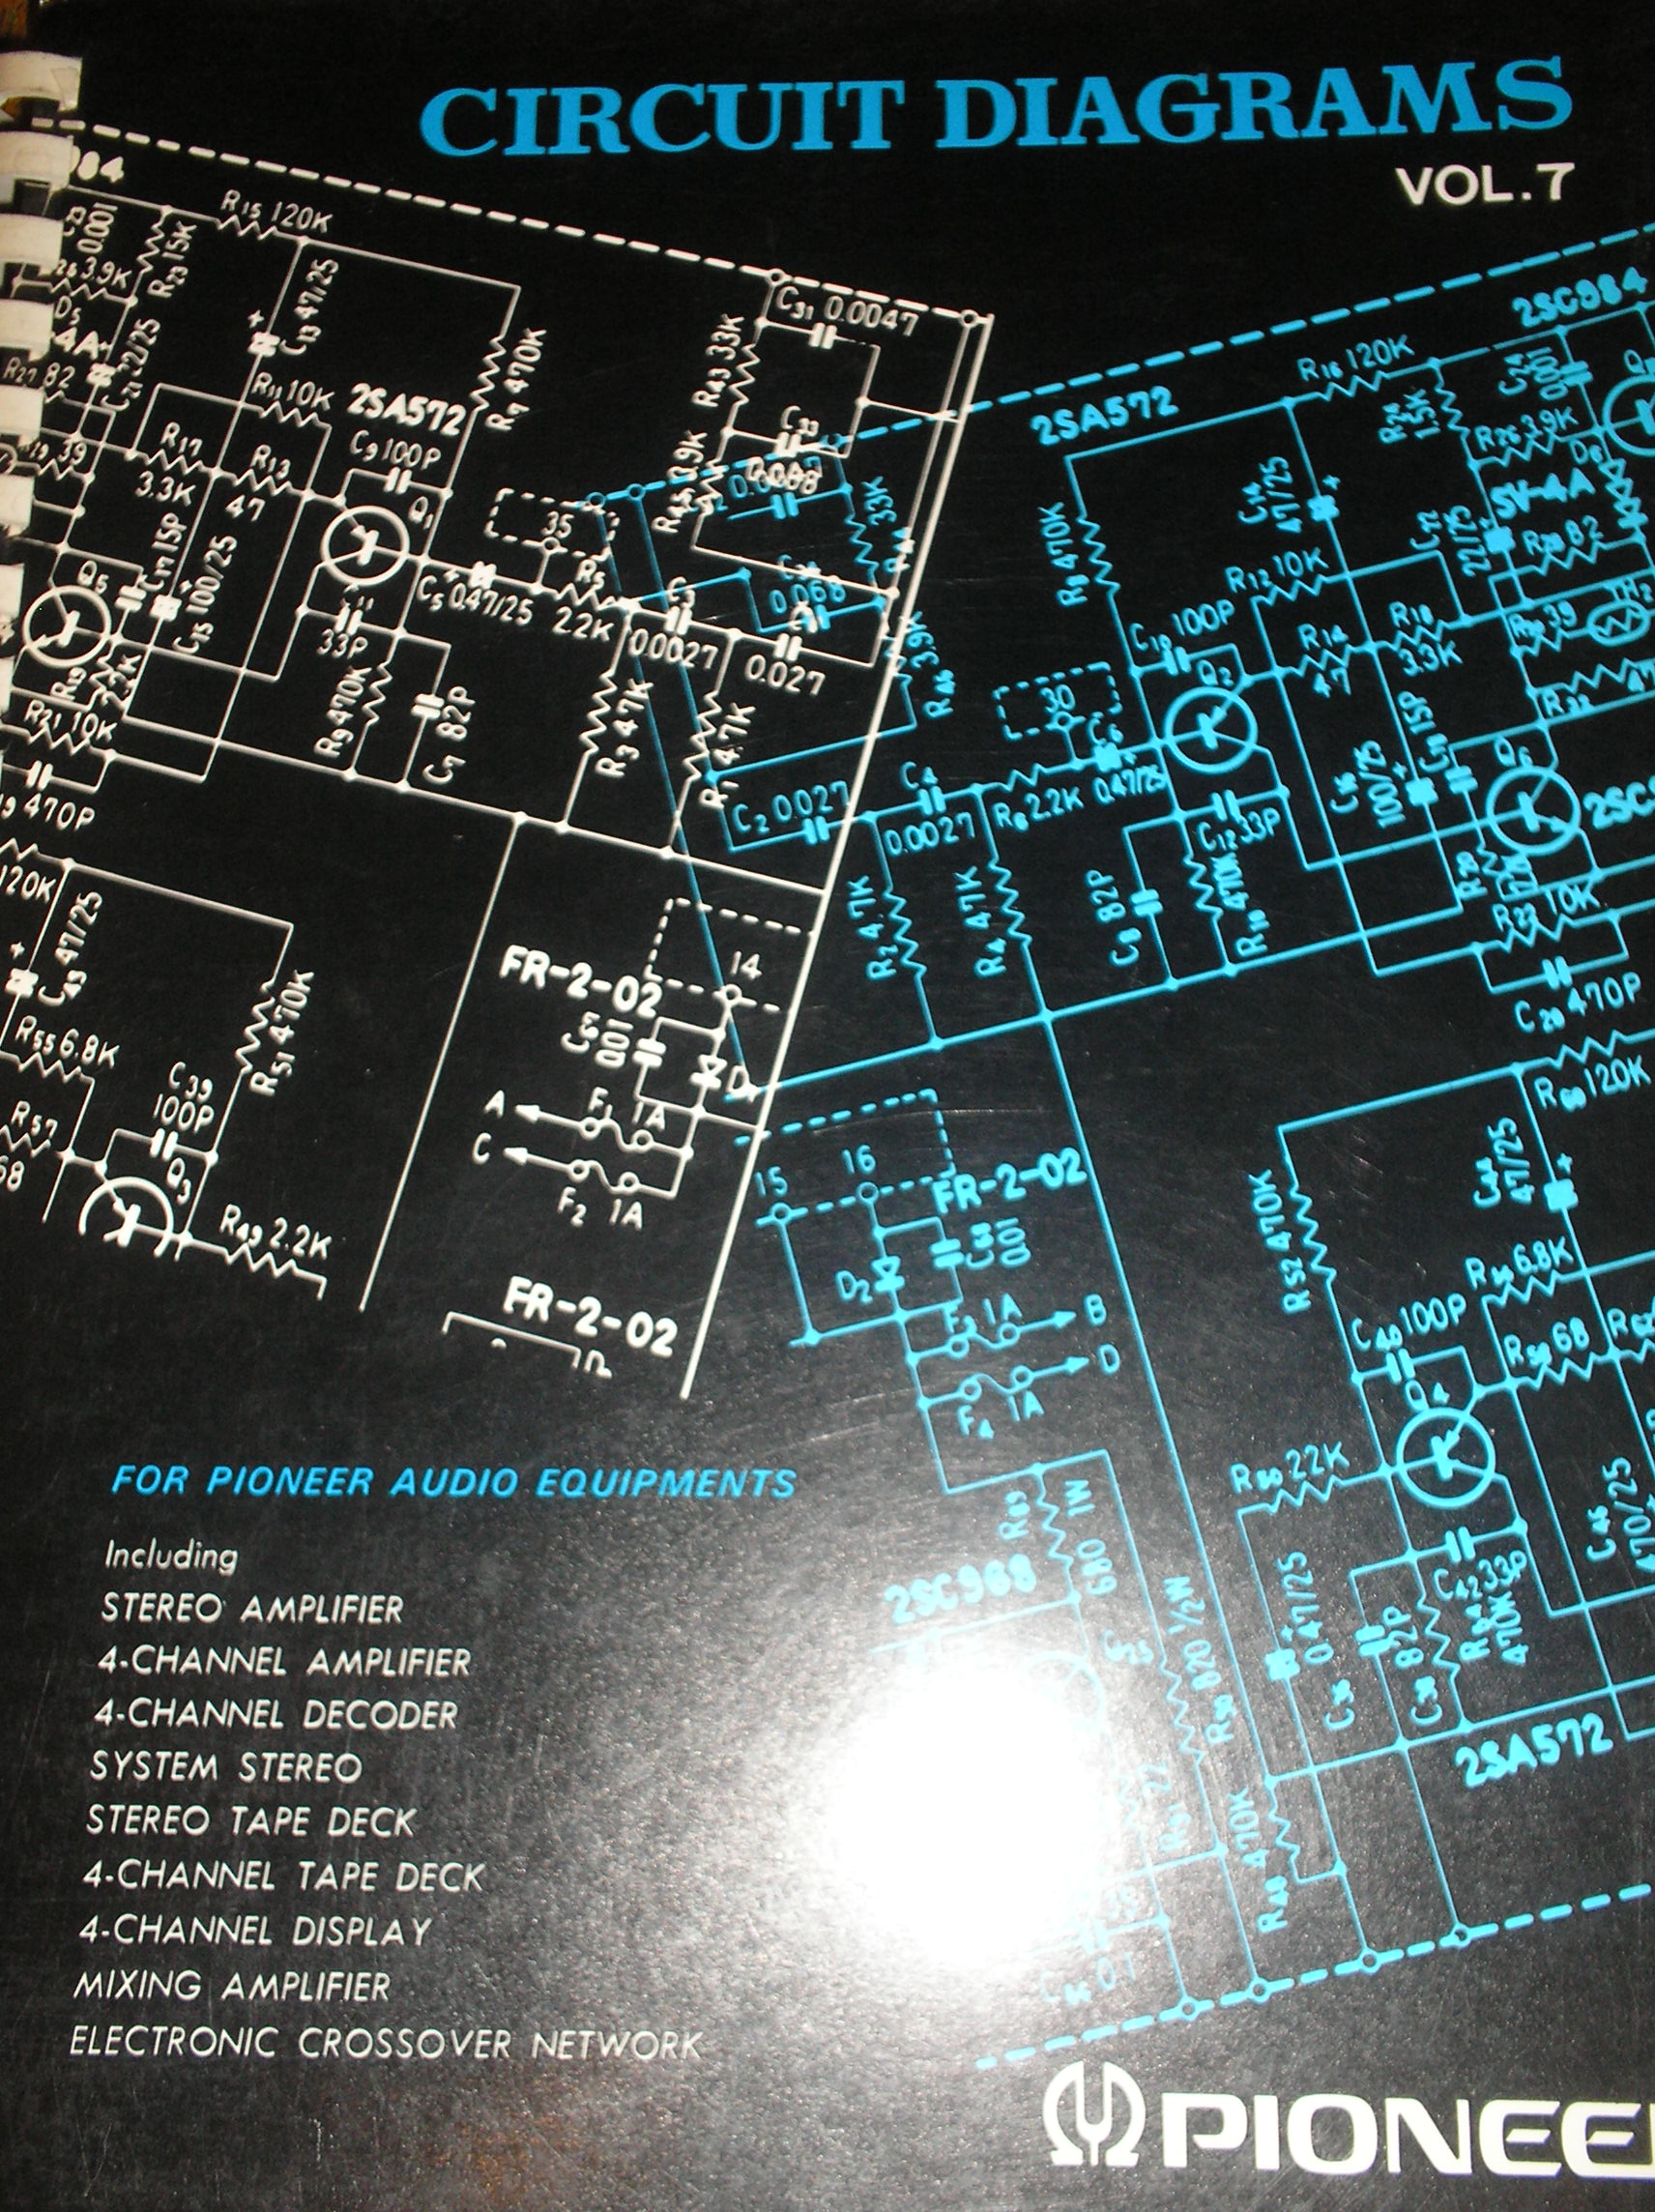 CT-3131A Cassette Deck fold out schematics.   Book 7